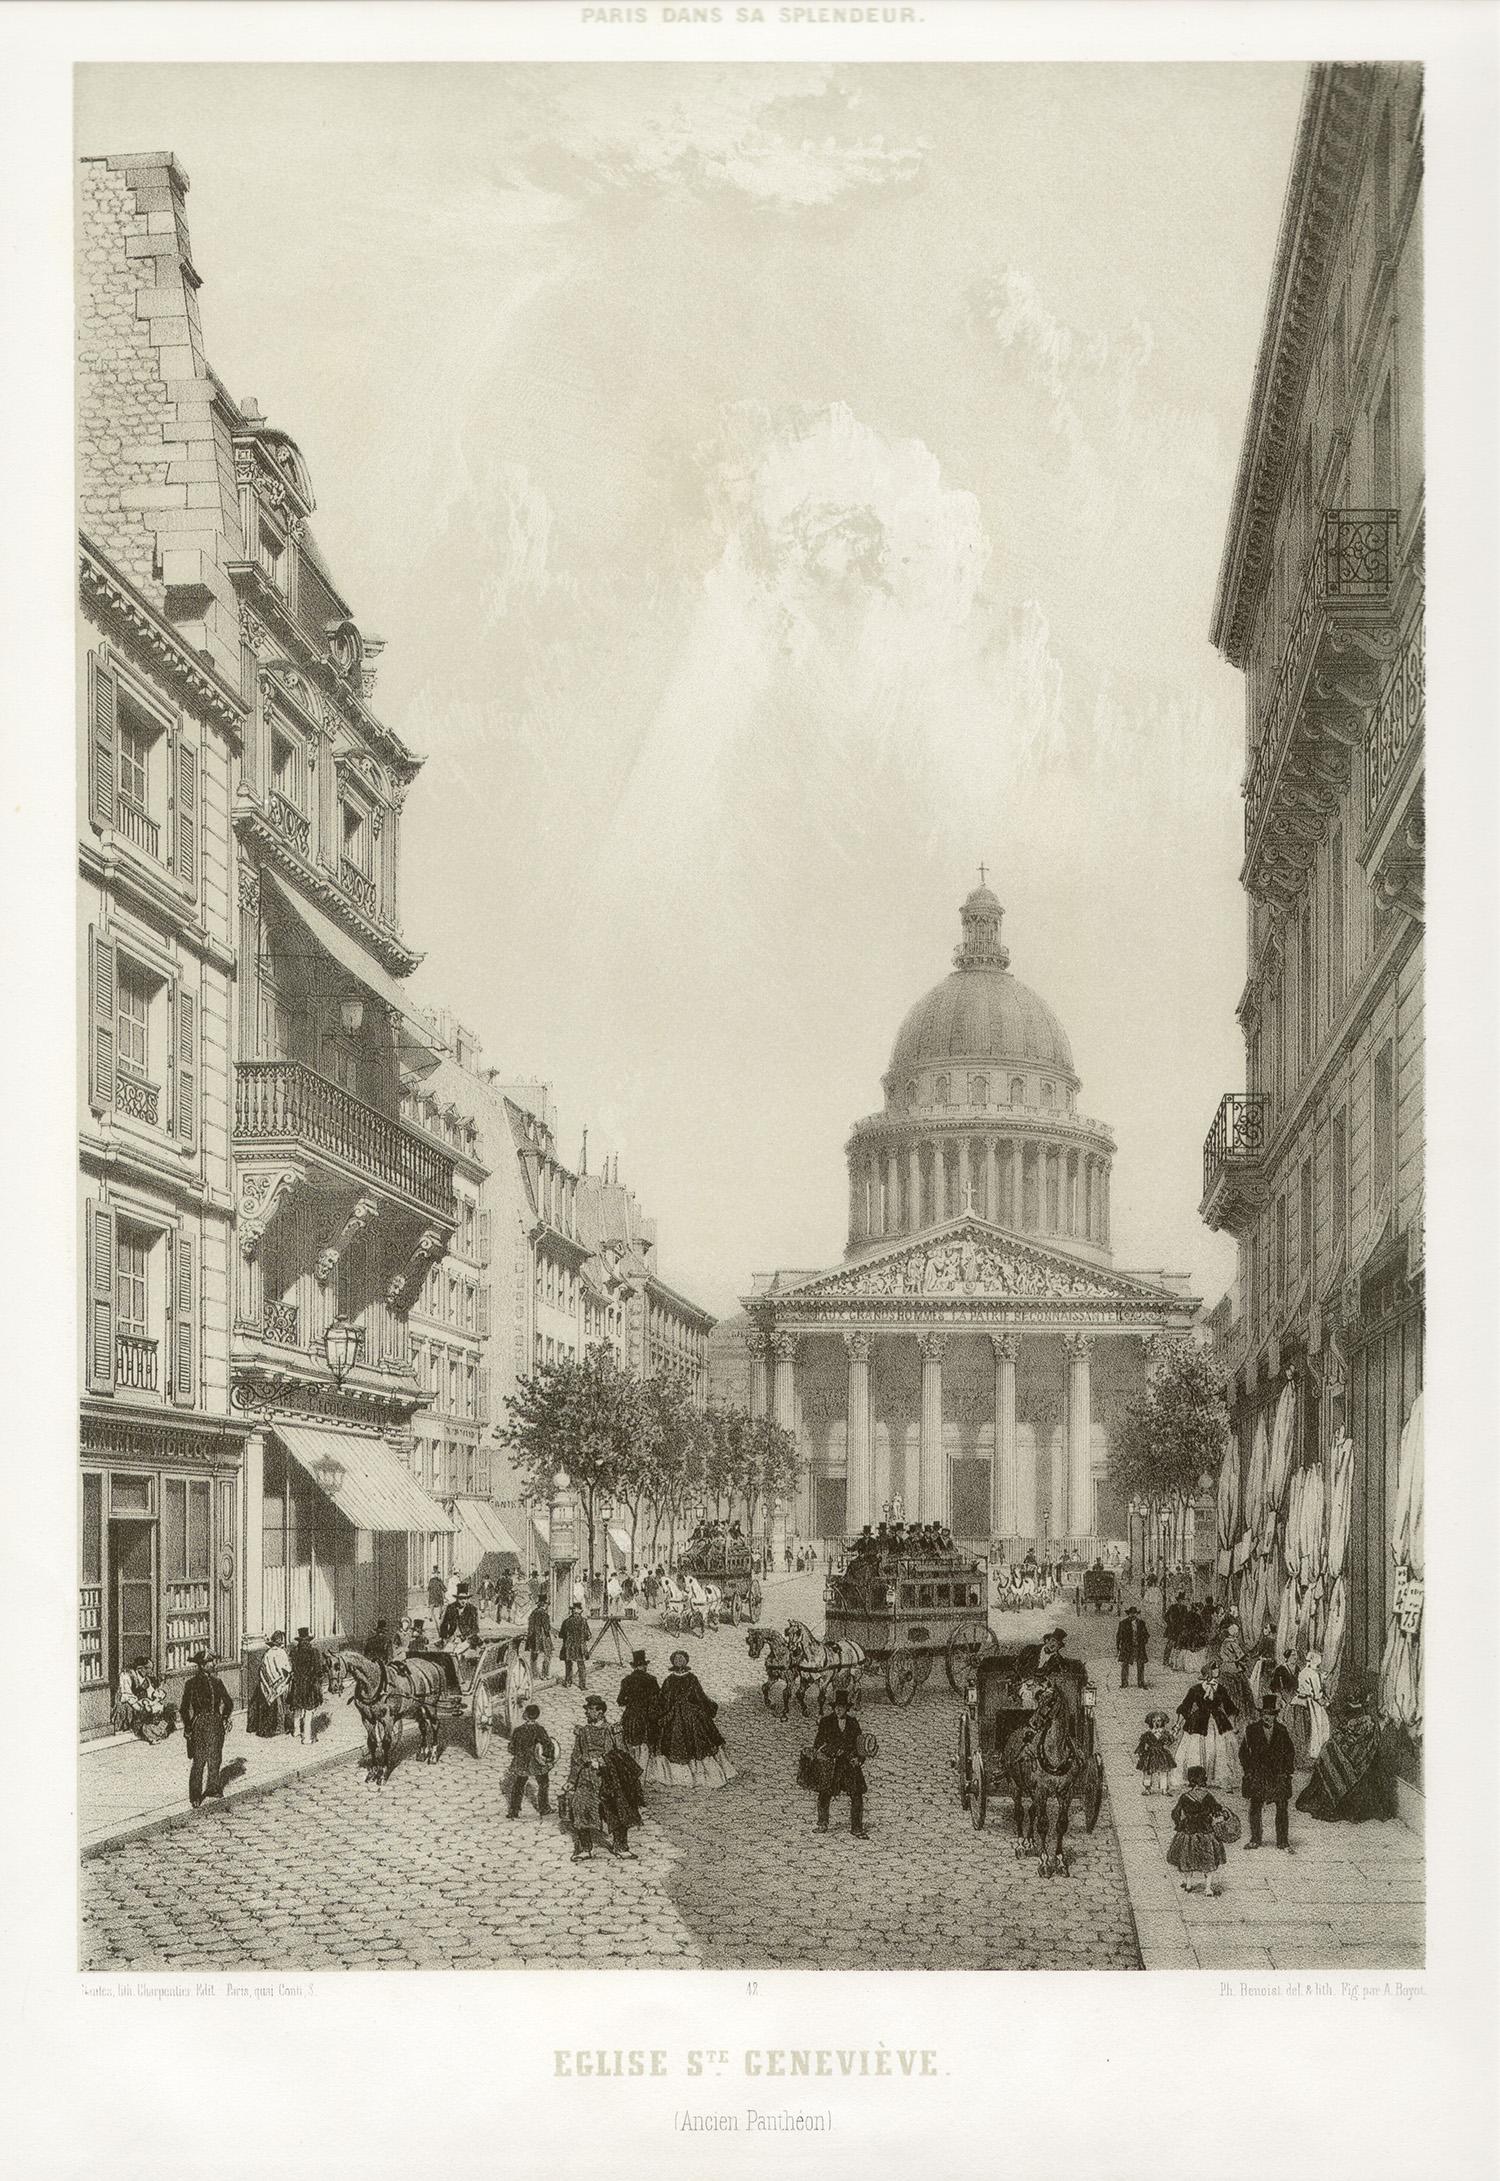 Paris - Eglise Saint Genevieve (Ancien Pantheon), French lithograph, 1861